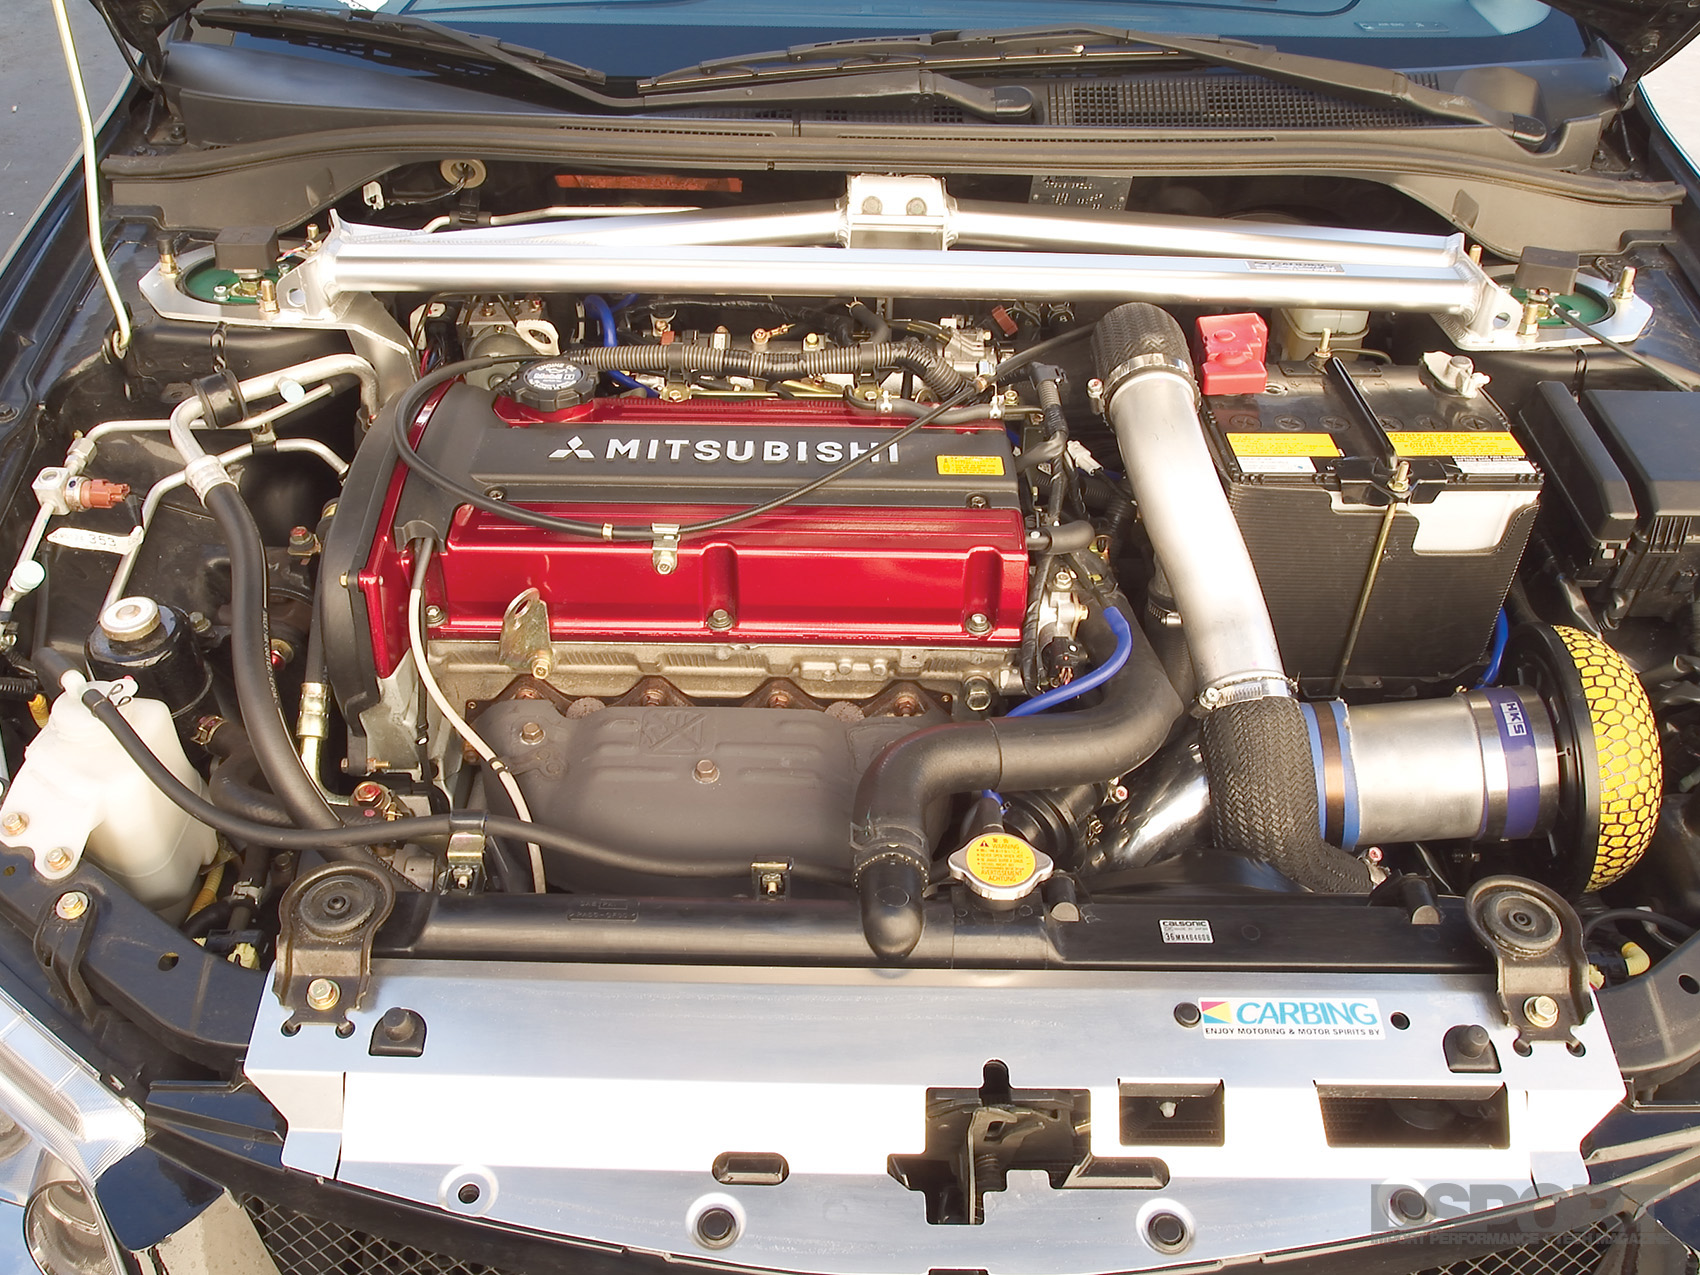 Насколько надежен двигатель. Мотор Митсубиси 4g63. Двигатель Митсубиси Лансер 4g63. 4g63t Mitsubishi Lancer Evolution. Двигатель Mitsubishi 4g63.